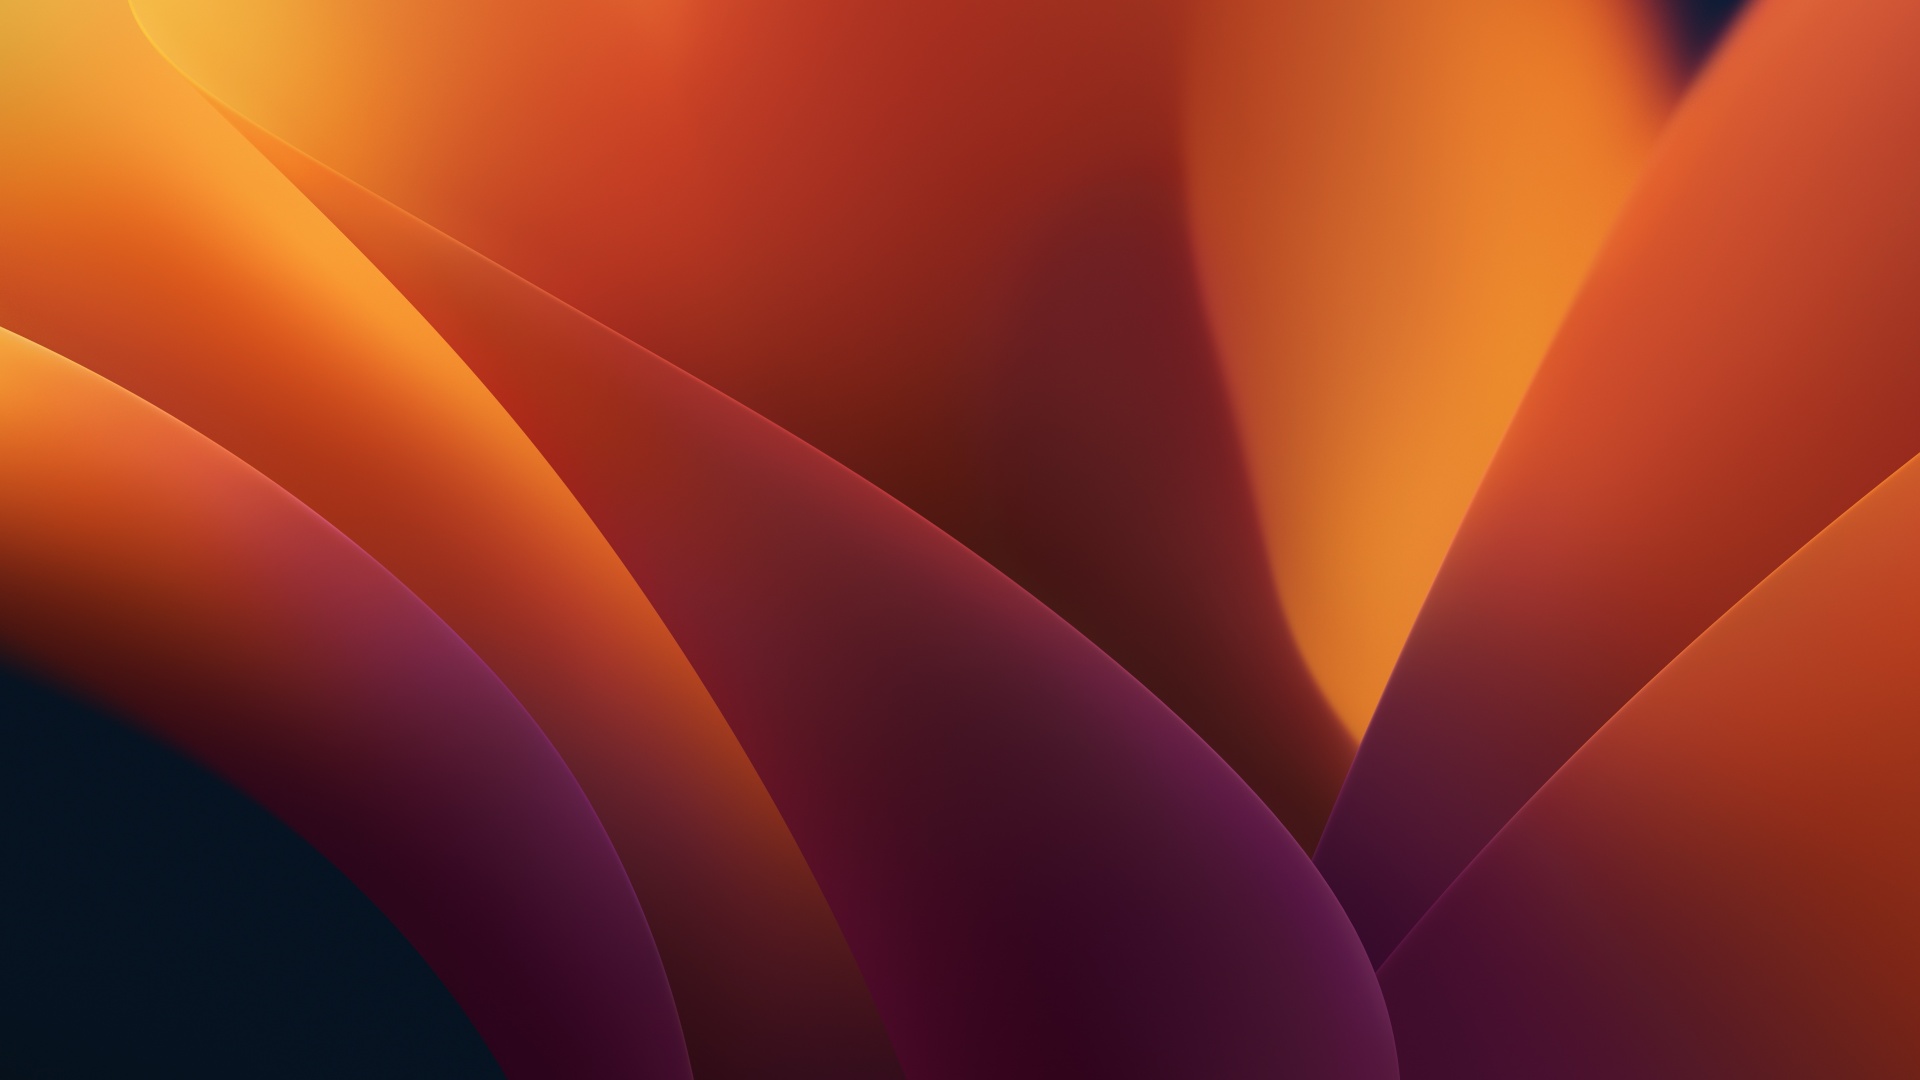 Tận hưởng sự đẹp tuyệt vời của macOS với hình nền 4K độ phân giải cao. Hãy chìm đắm trong màu sắc hoàn hảo và chi tiết tuyệt vời, khiến bạn có cảm giác như đang sống trong một bức tranh thực tế ảo đầy màu sắc. Đón đầu sự thay đổi những ngày tới, cùng trang trí máy tính của bạn với hình nền macOS 4K. 